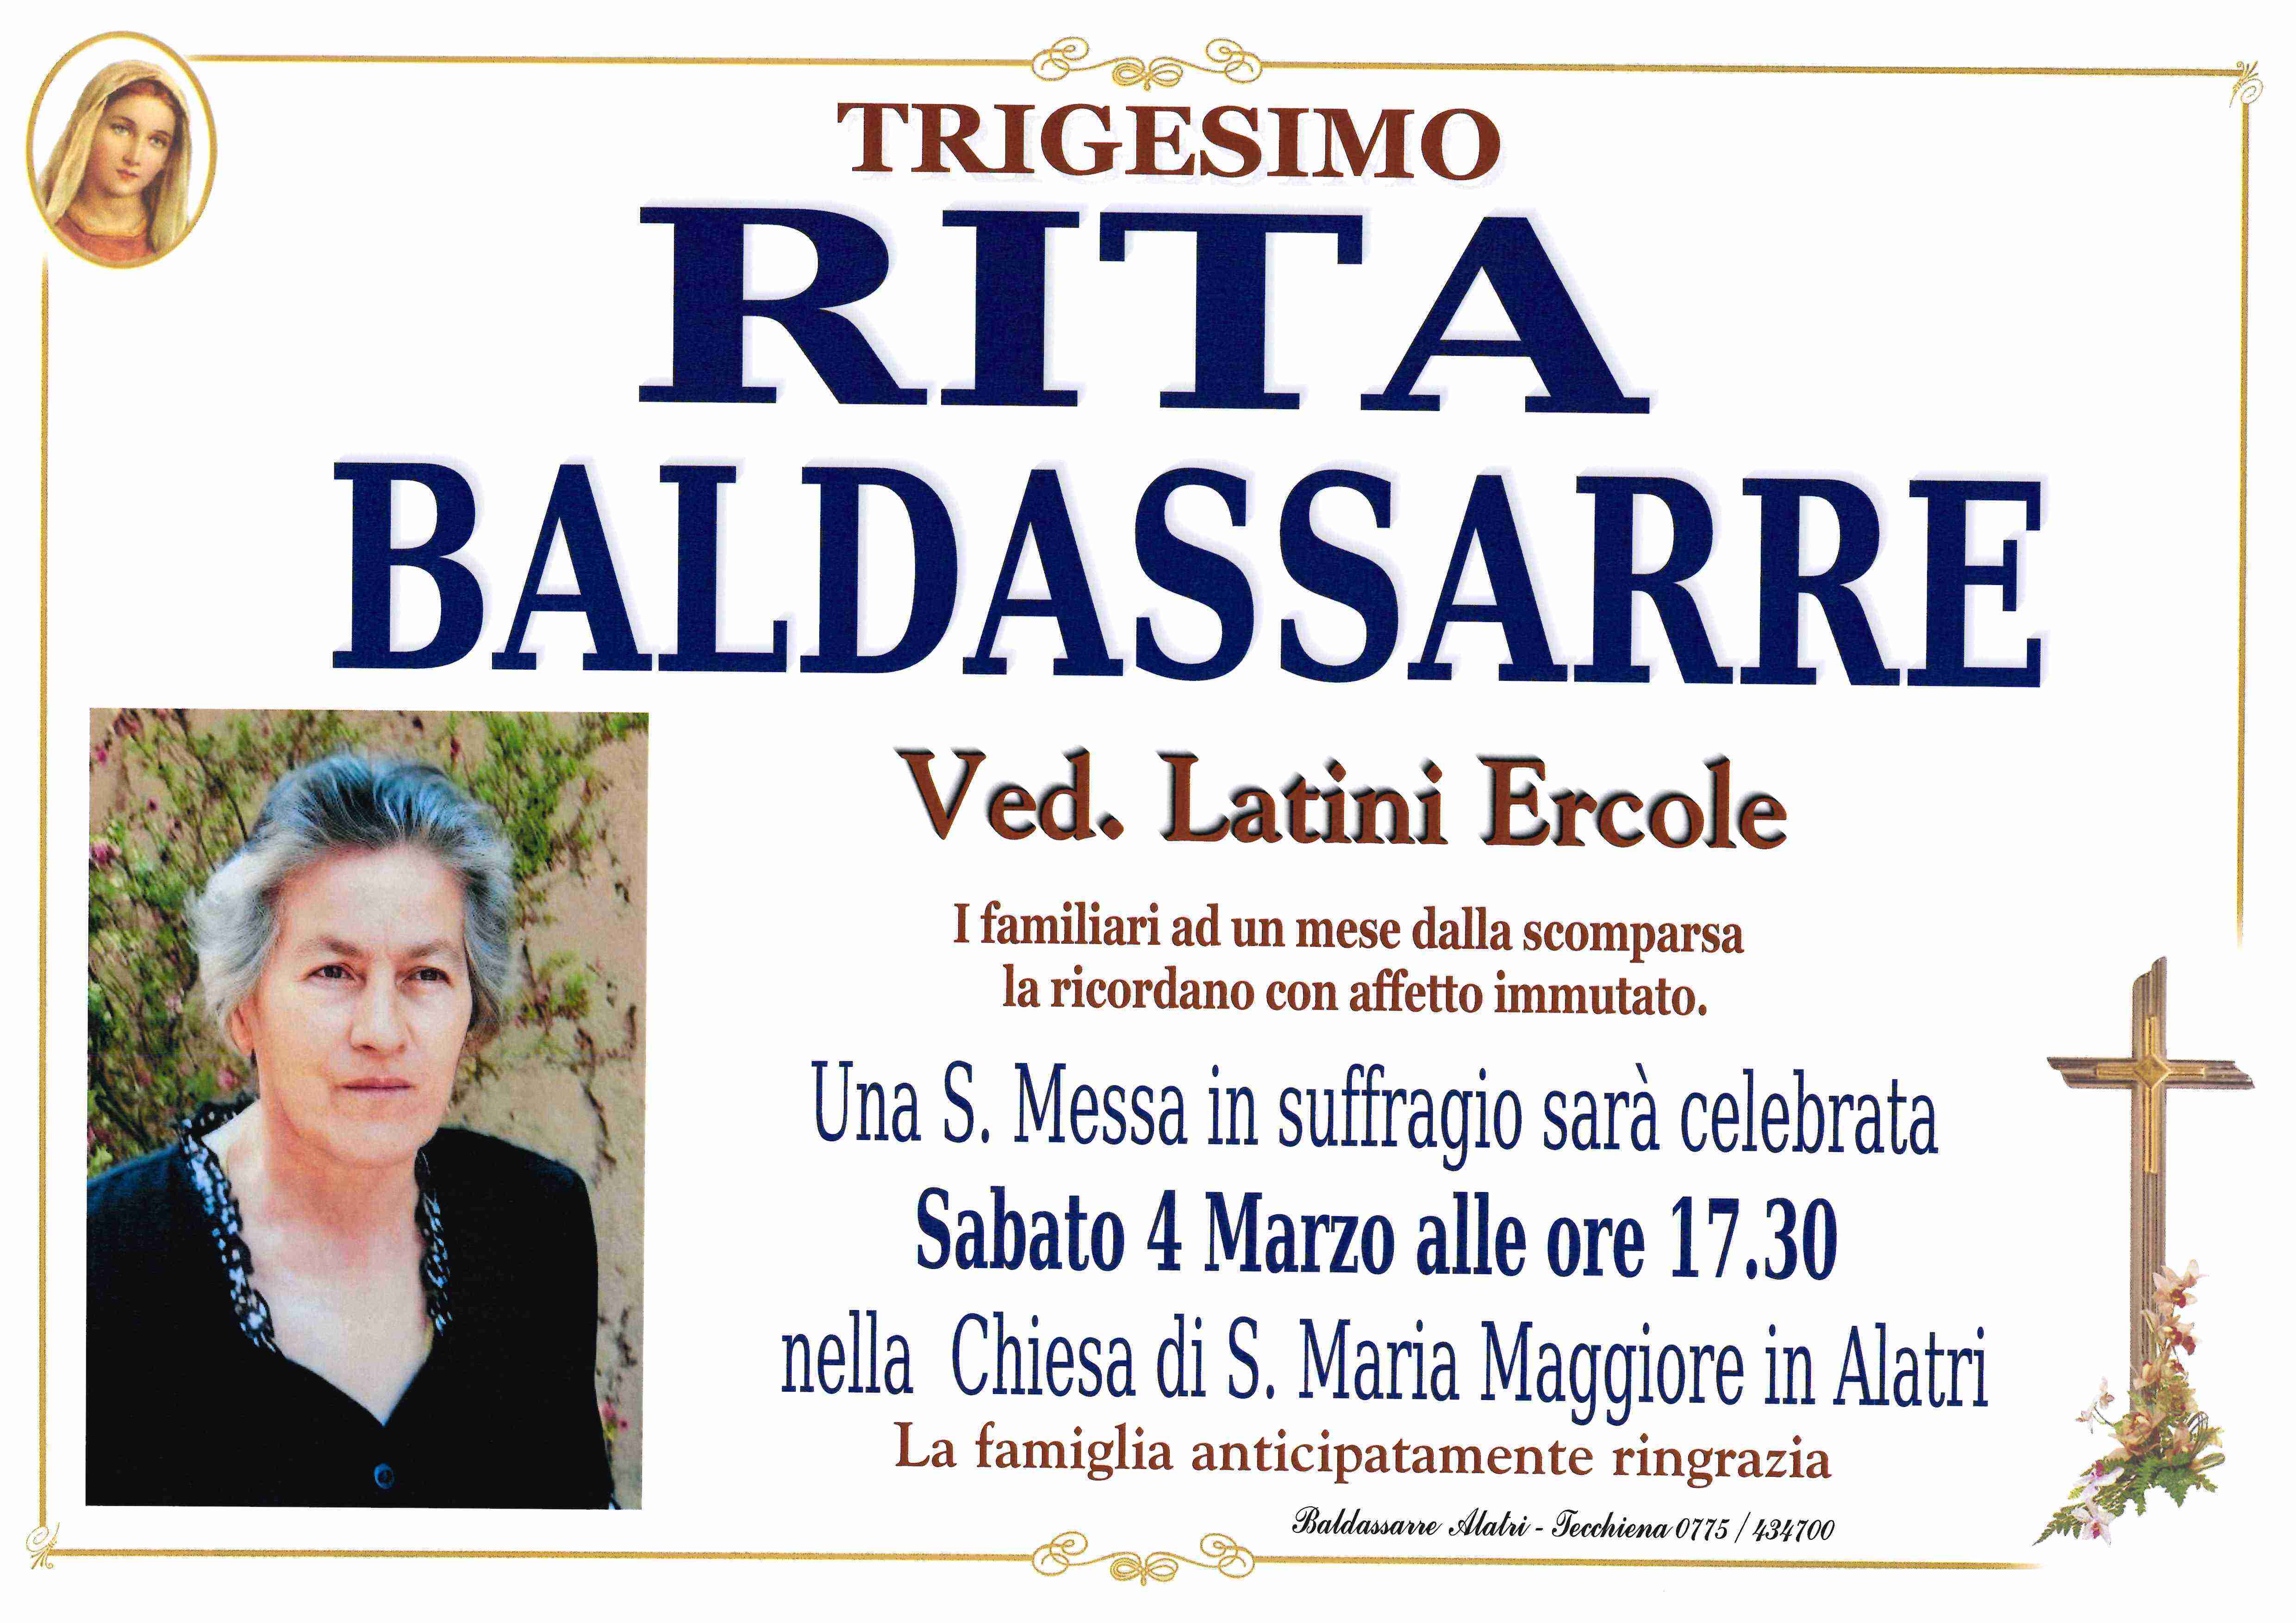 Rita Baldassarre